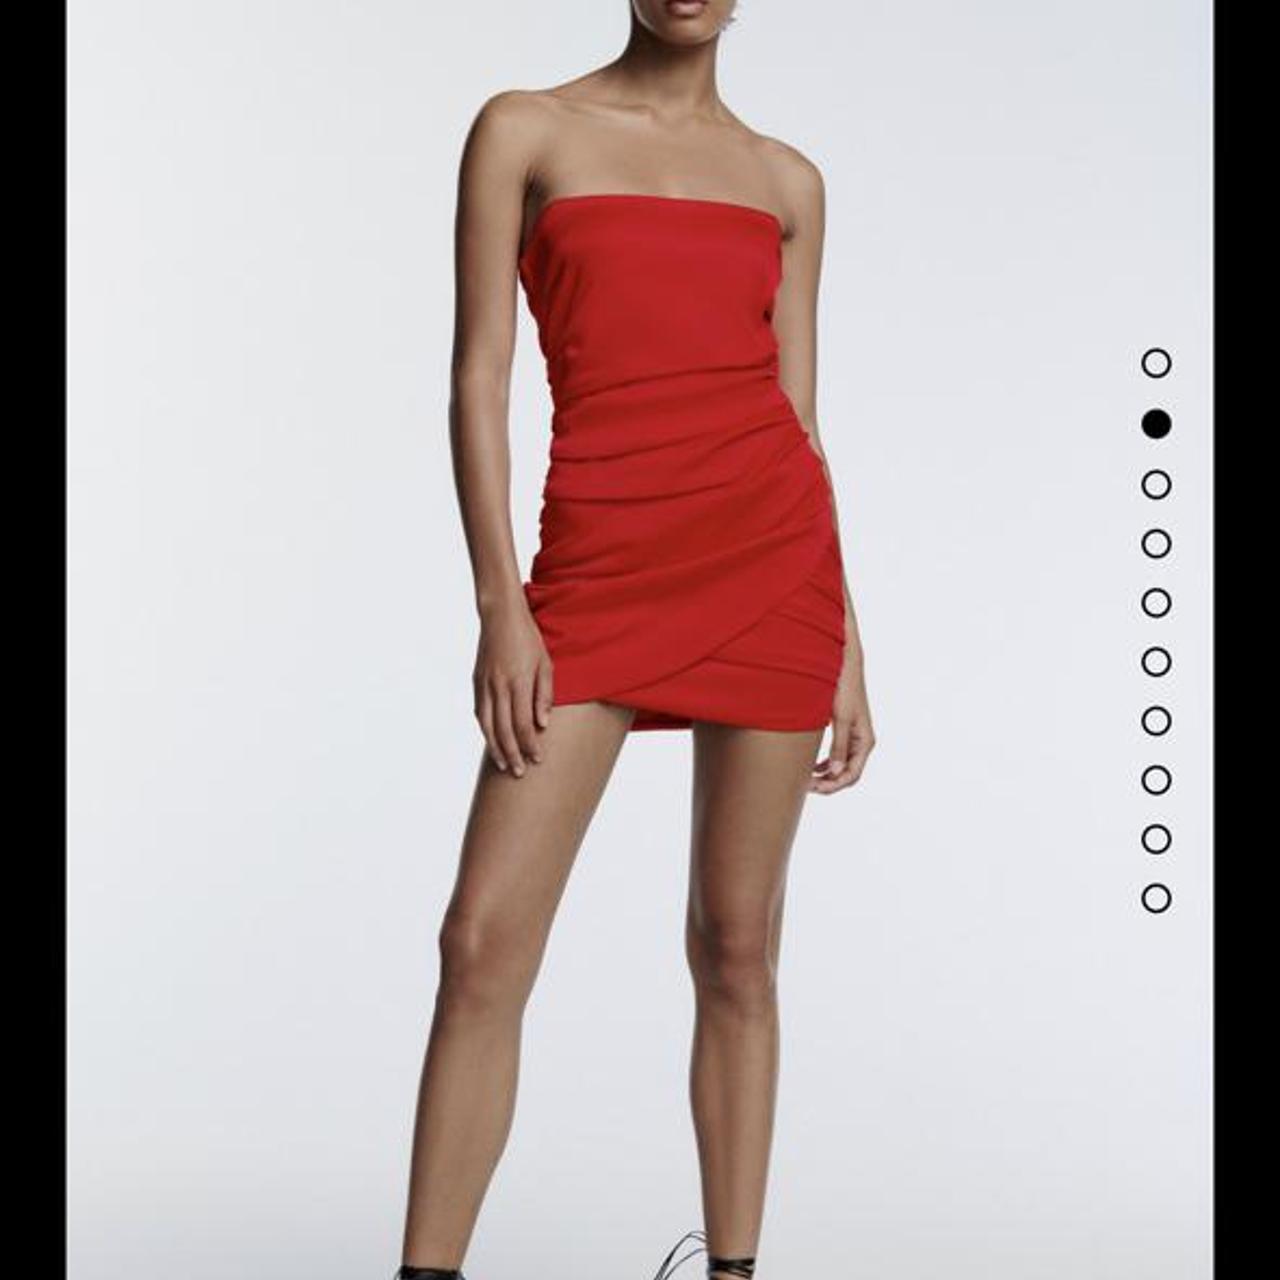 Zara Red Strapless Dress Size S ...